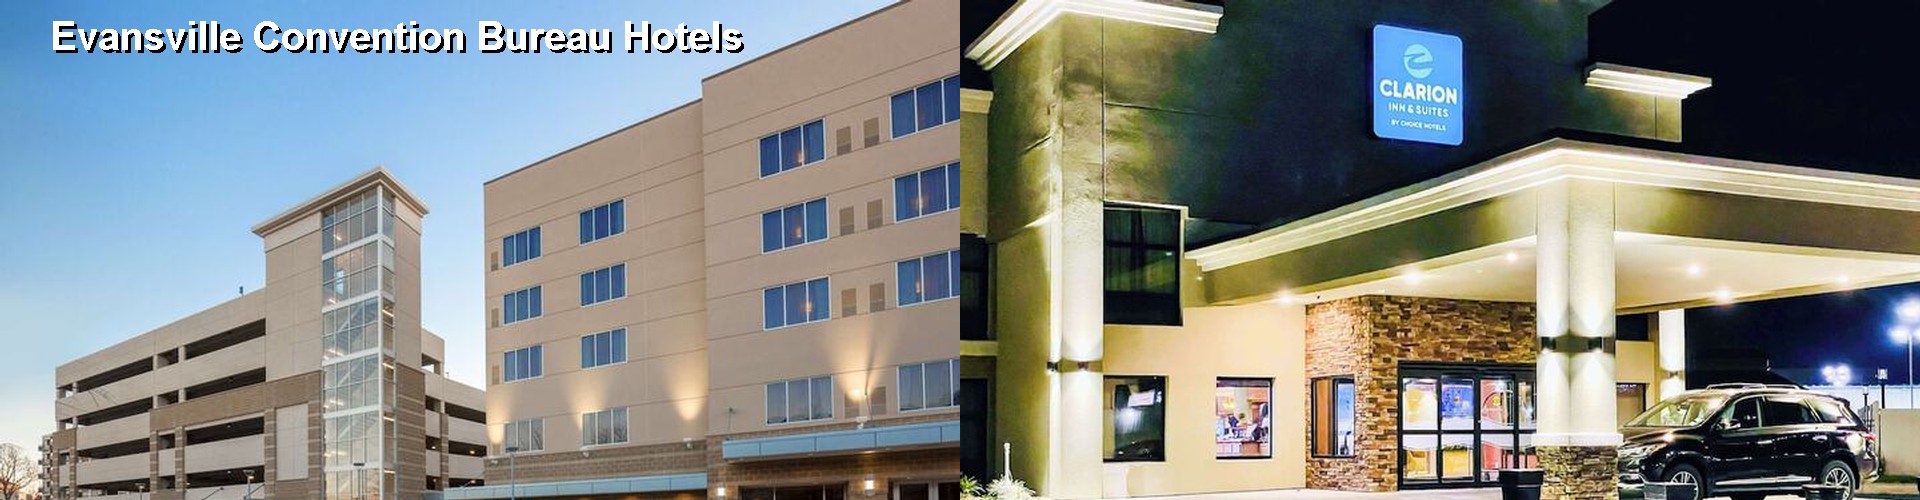 5 Best Hotels near Evansville Convention Bureau